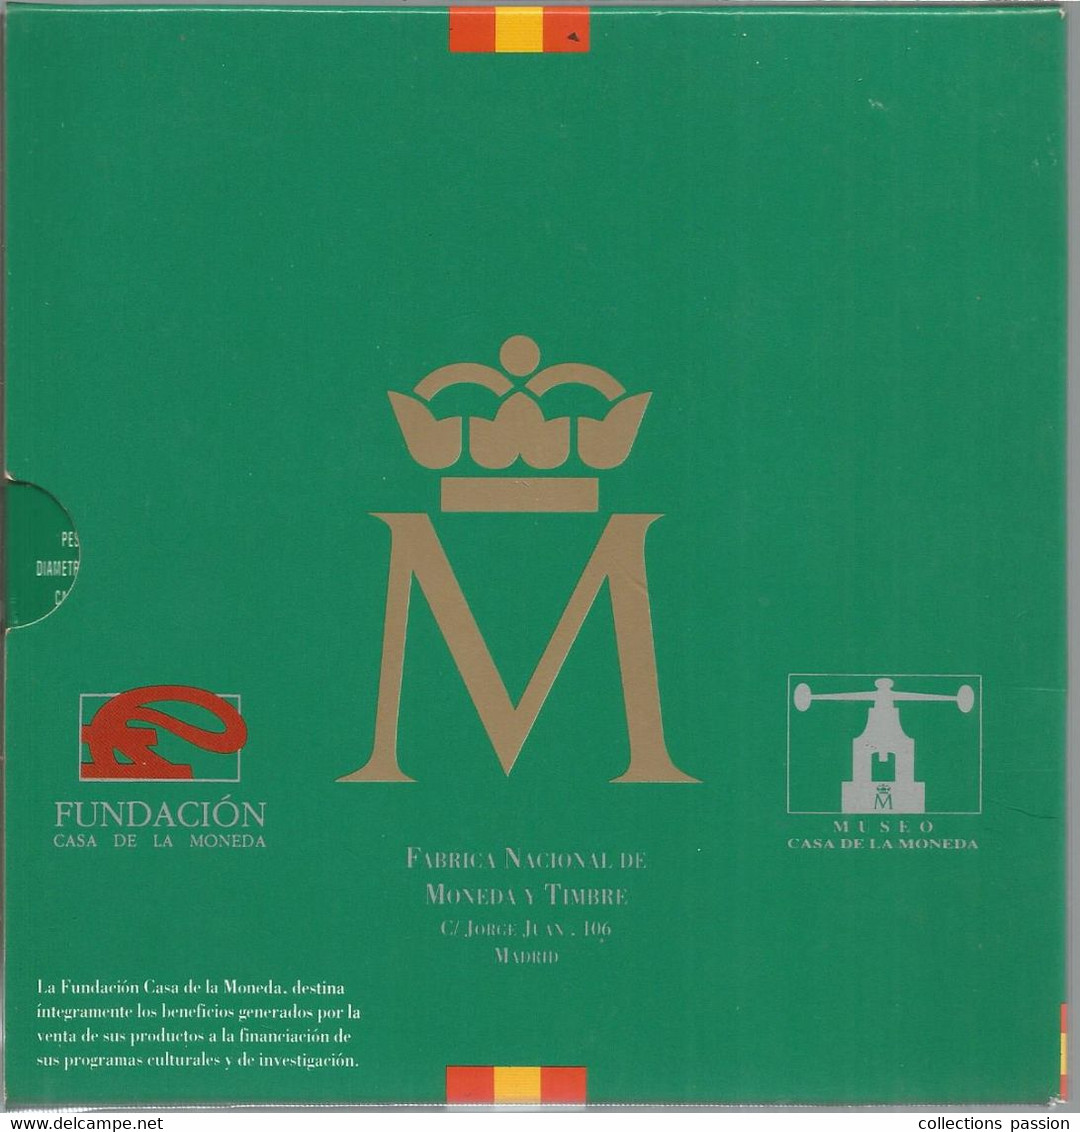 JC, Coleccion De Monedas Espanolas De Curso Legal , Pruebasnumismat, Acunaciones Del 93 ,1993 ,5 Scans , Frais Fr 4.00 E -  Colecciones